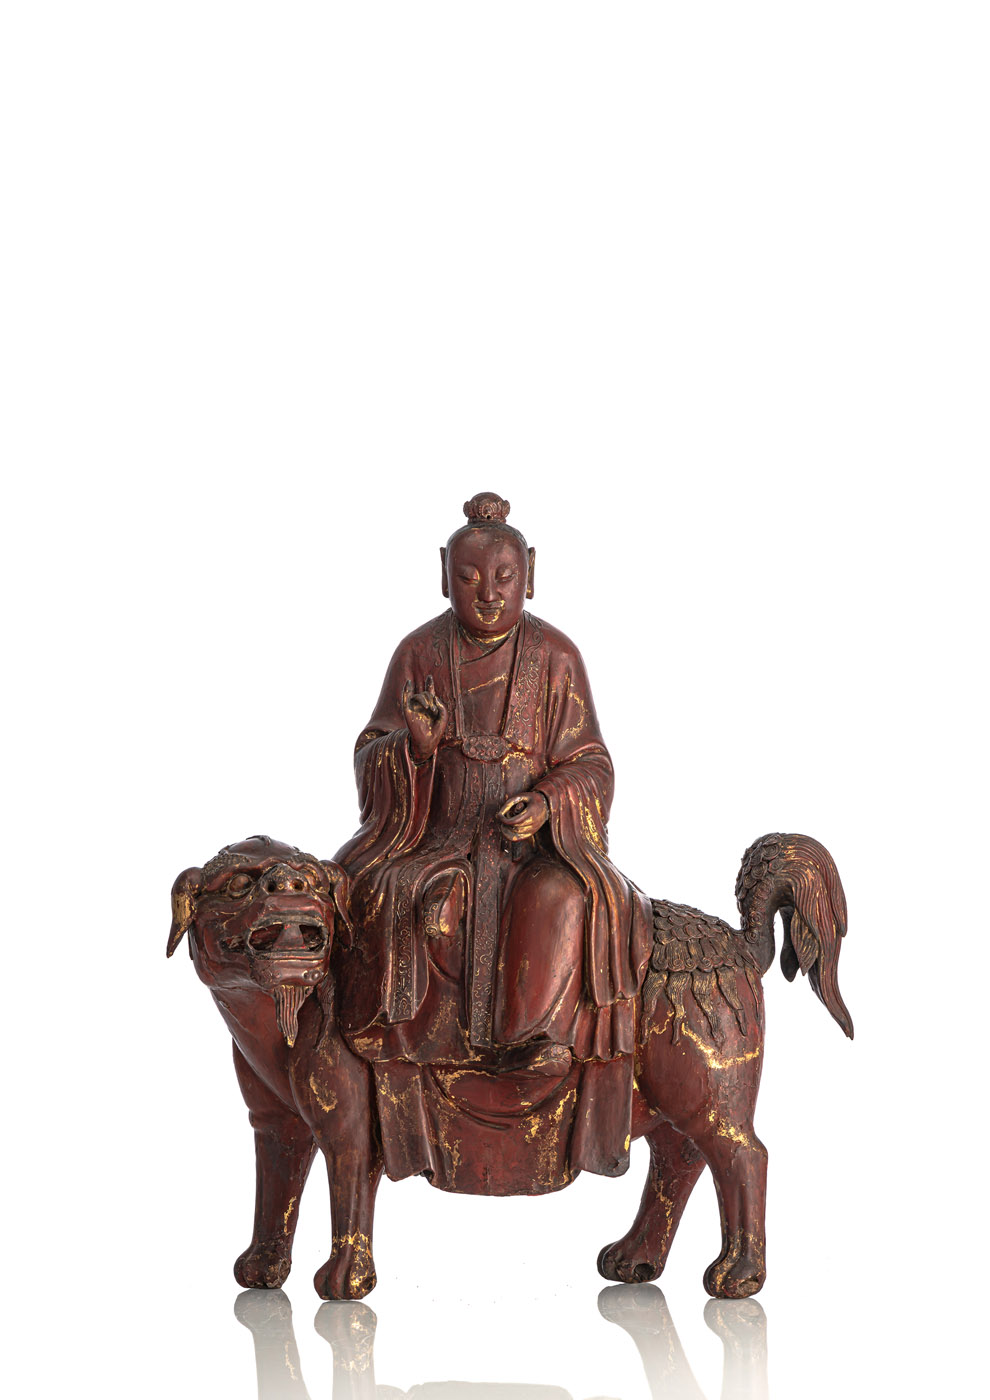 <b>Geschnitzte Figur aus Holz mit Lackauflage, möglicherweise Taiyi, der himmlische Retter</b>